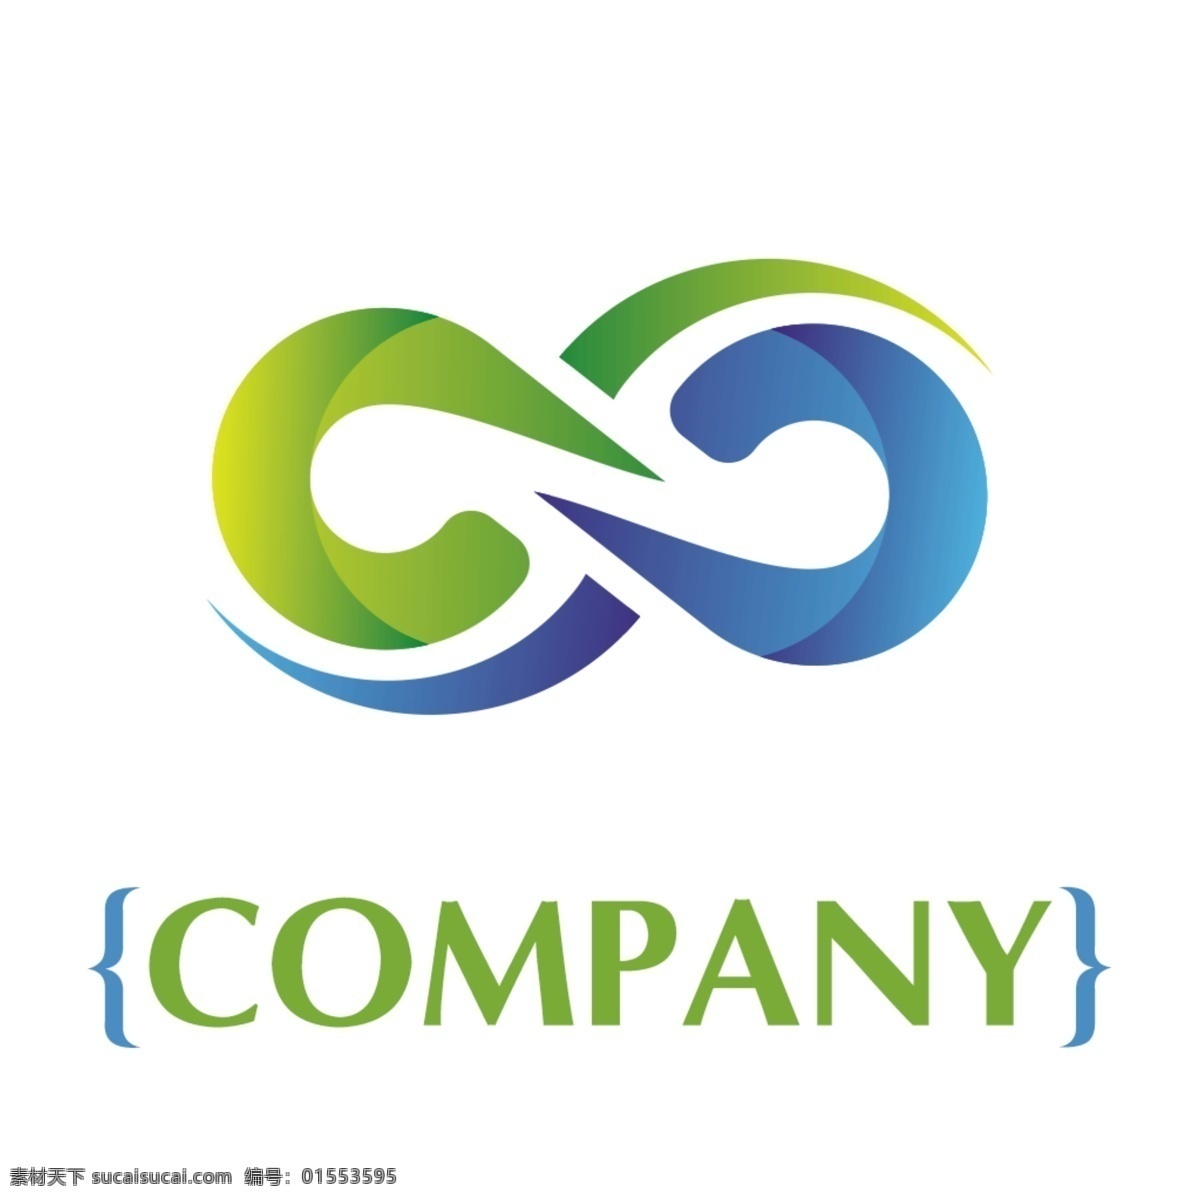 2018 变形 数字 公司 logo 模板 蓝色 绿色 简洁 欧美 简约 公司logo 商标